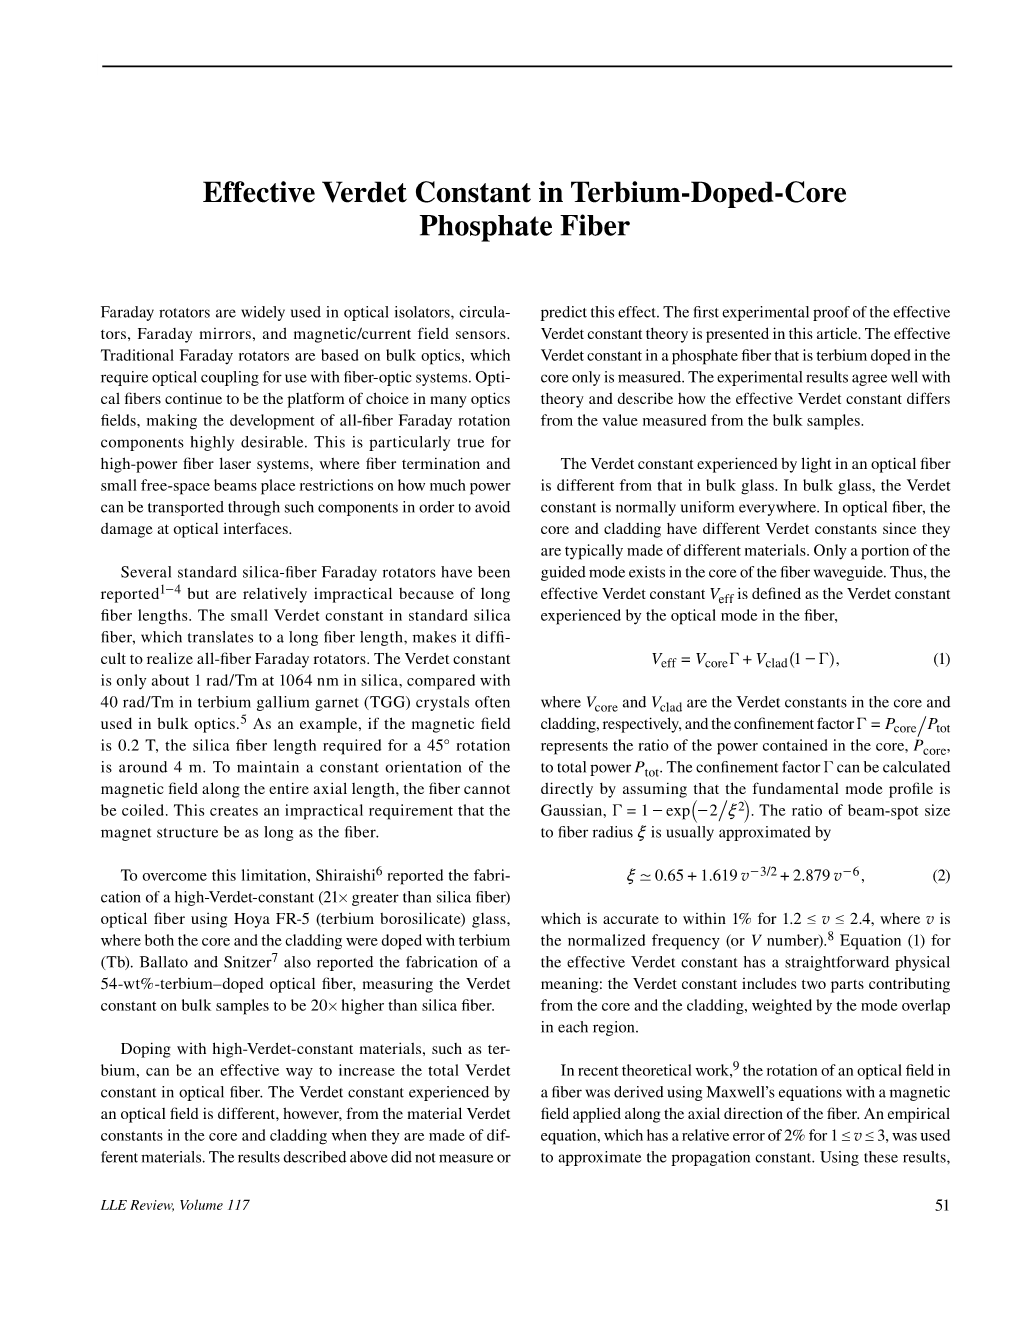 Effective Verdet Constant in Terbium-Doped-Core Phosphate Fiber